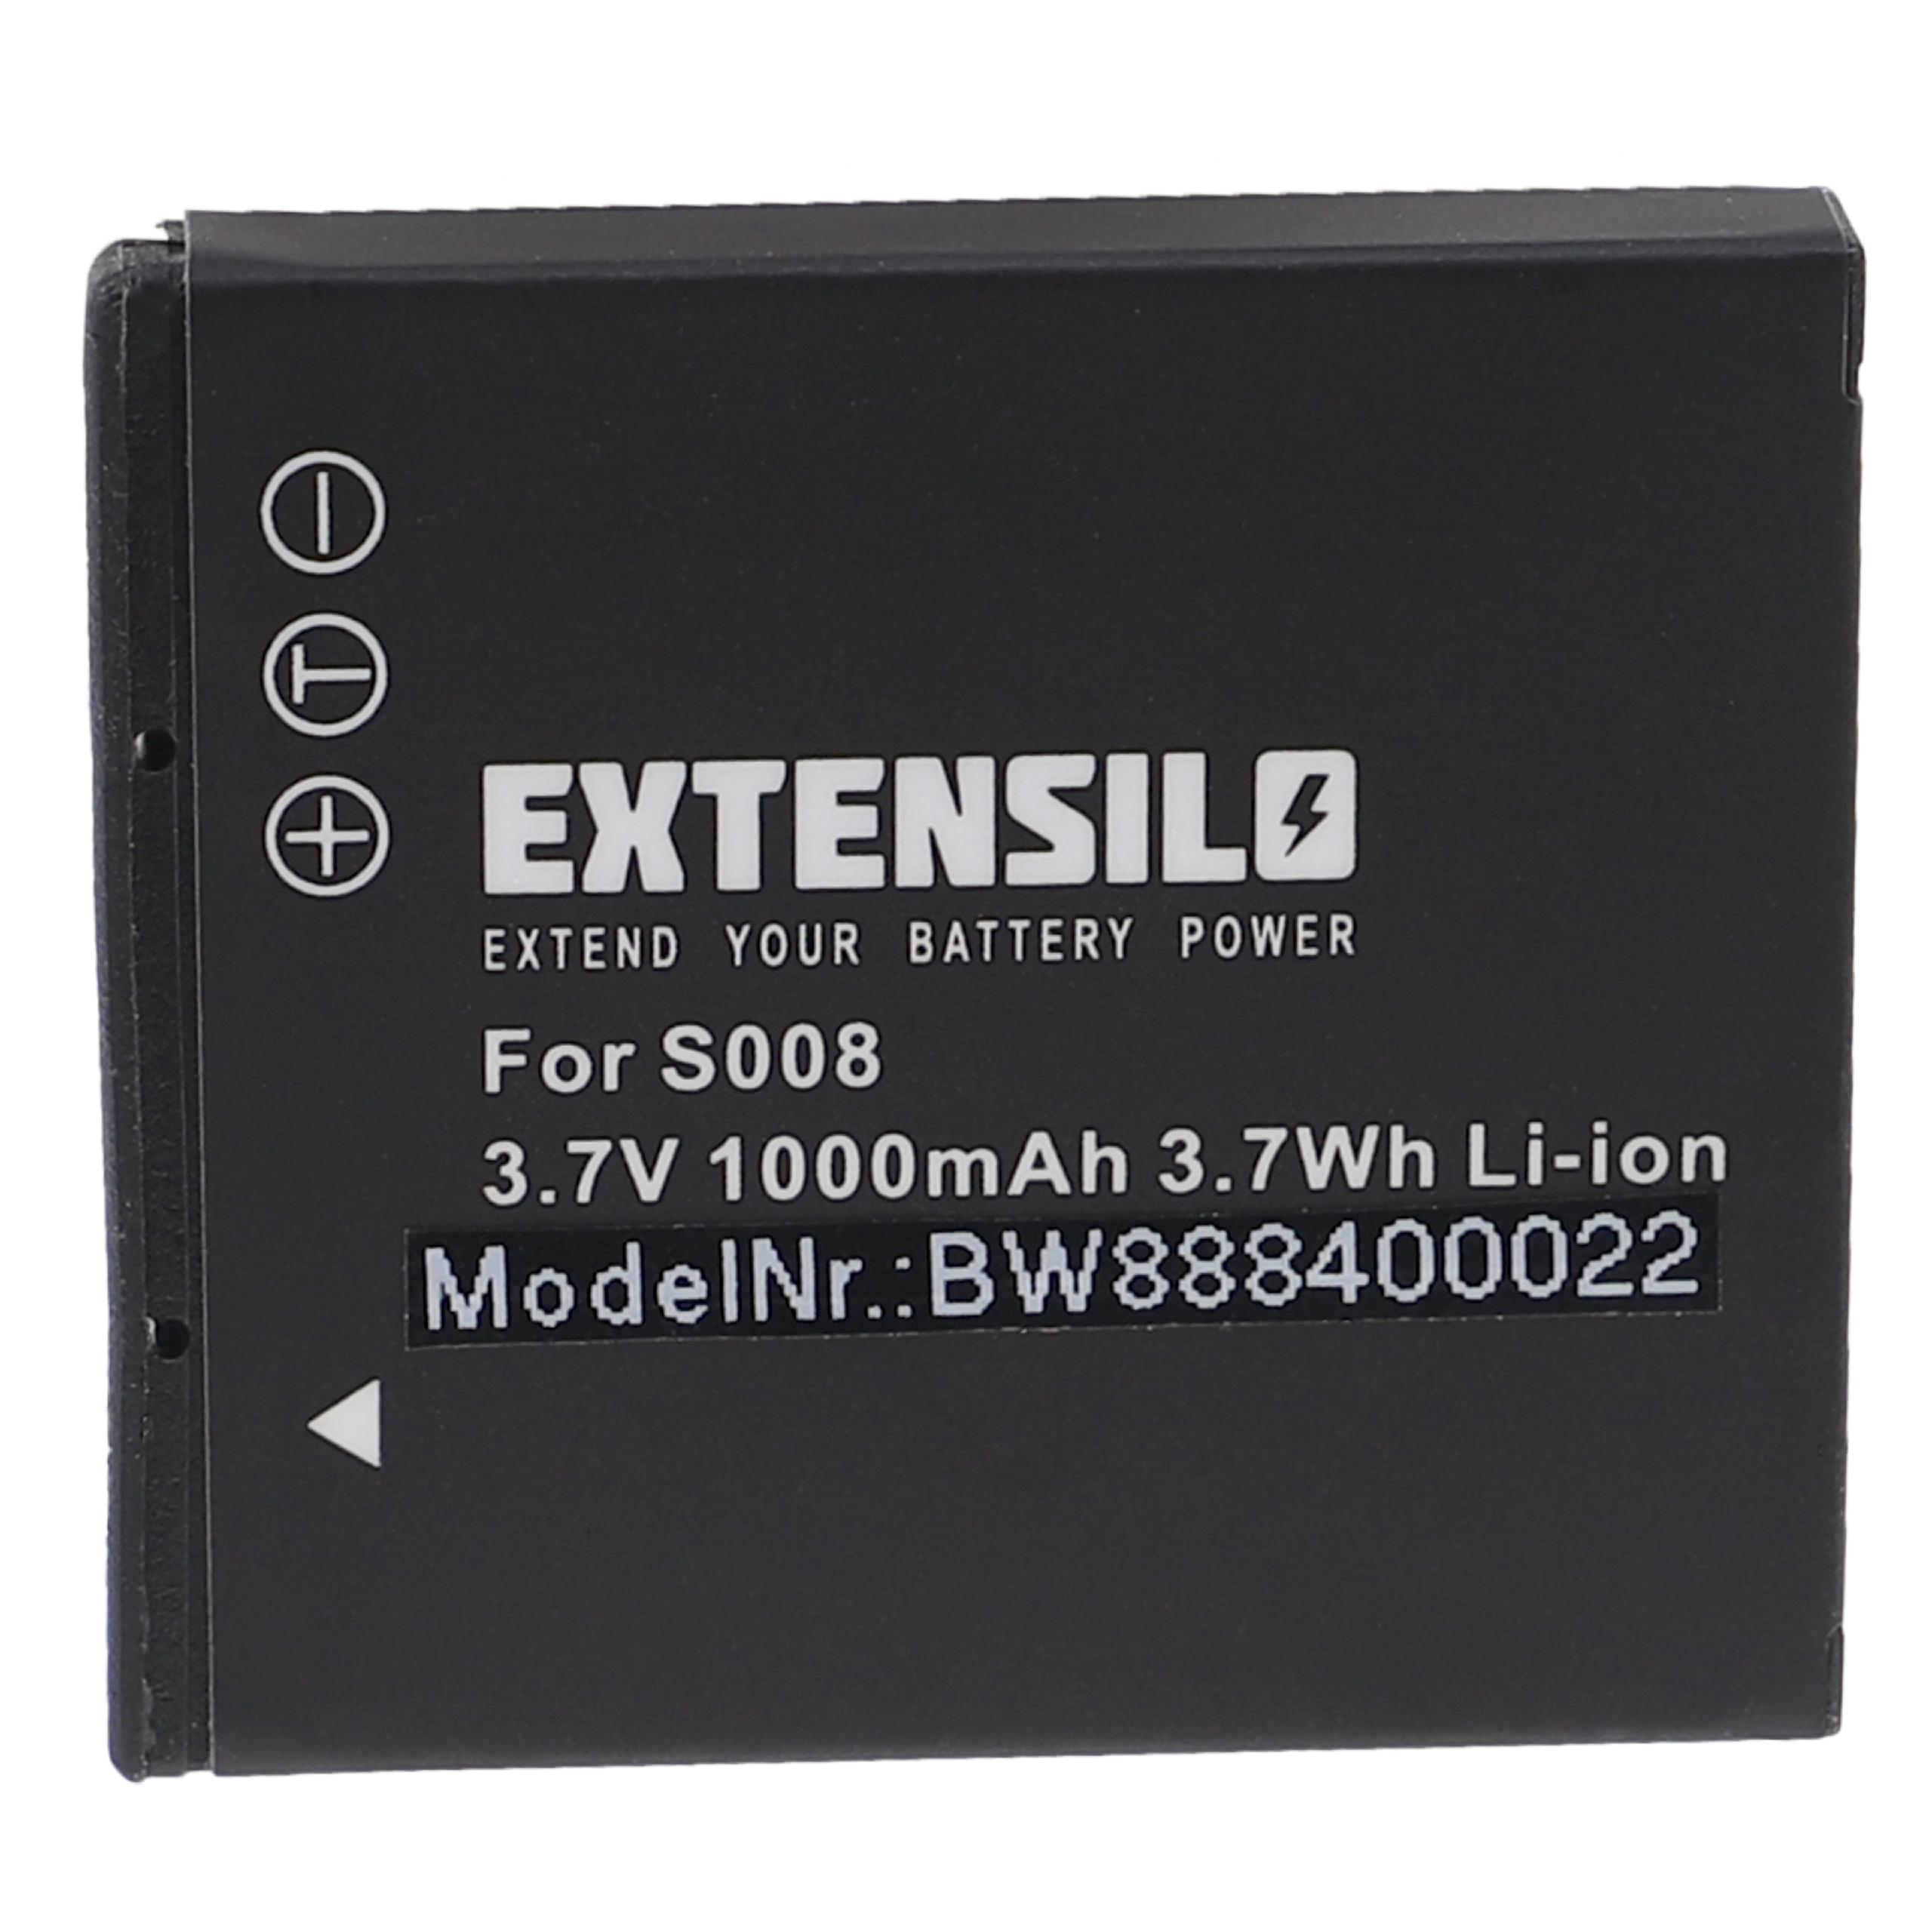 EXTENSILO kompatibel mit Leica Volt, - Kamera, C-Lux 3.7 Li-Ion 1000 Akku 2